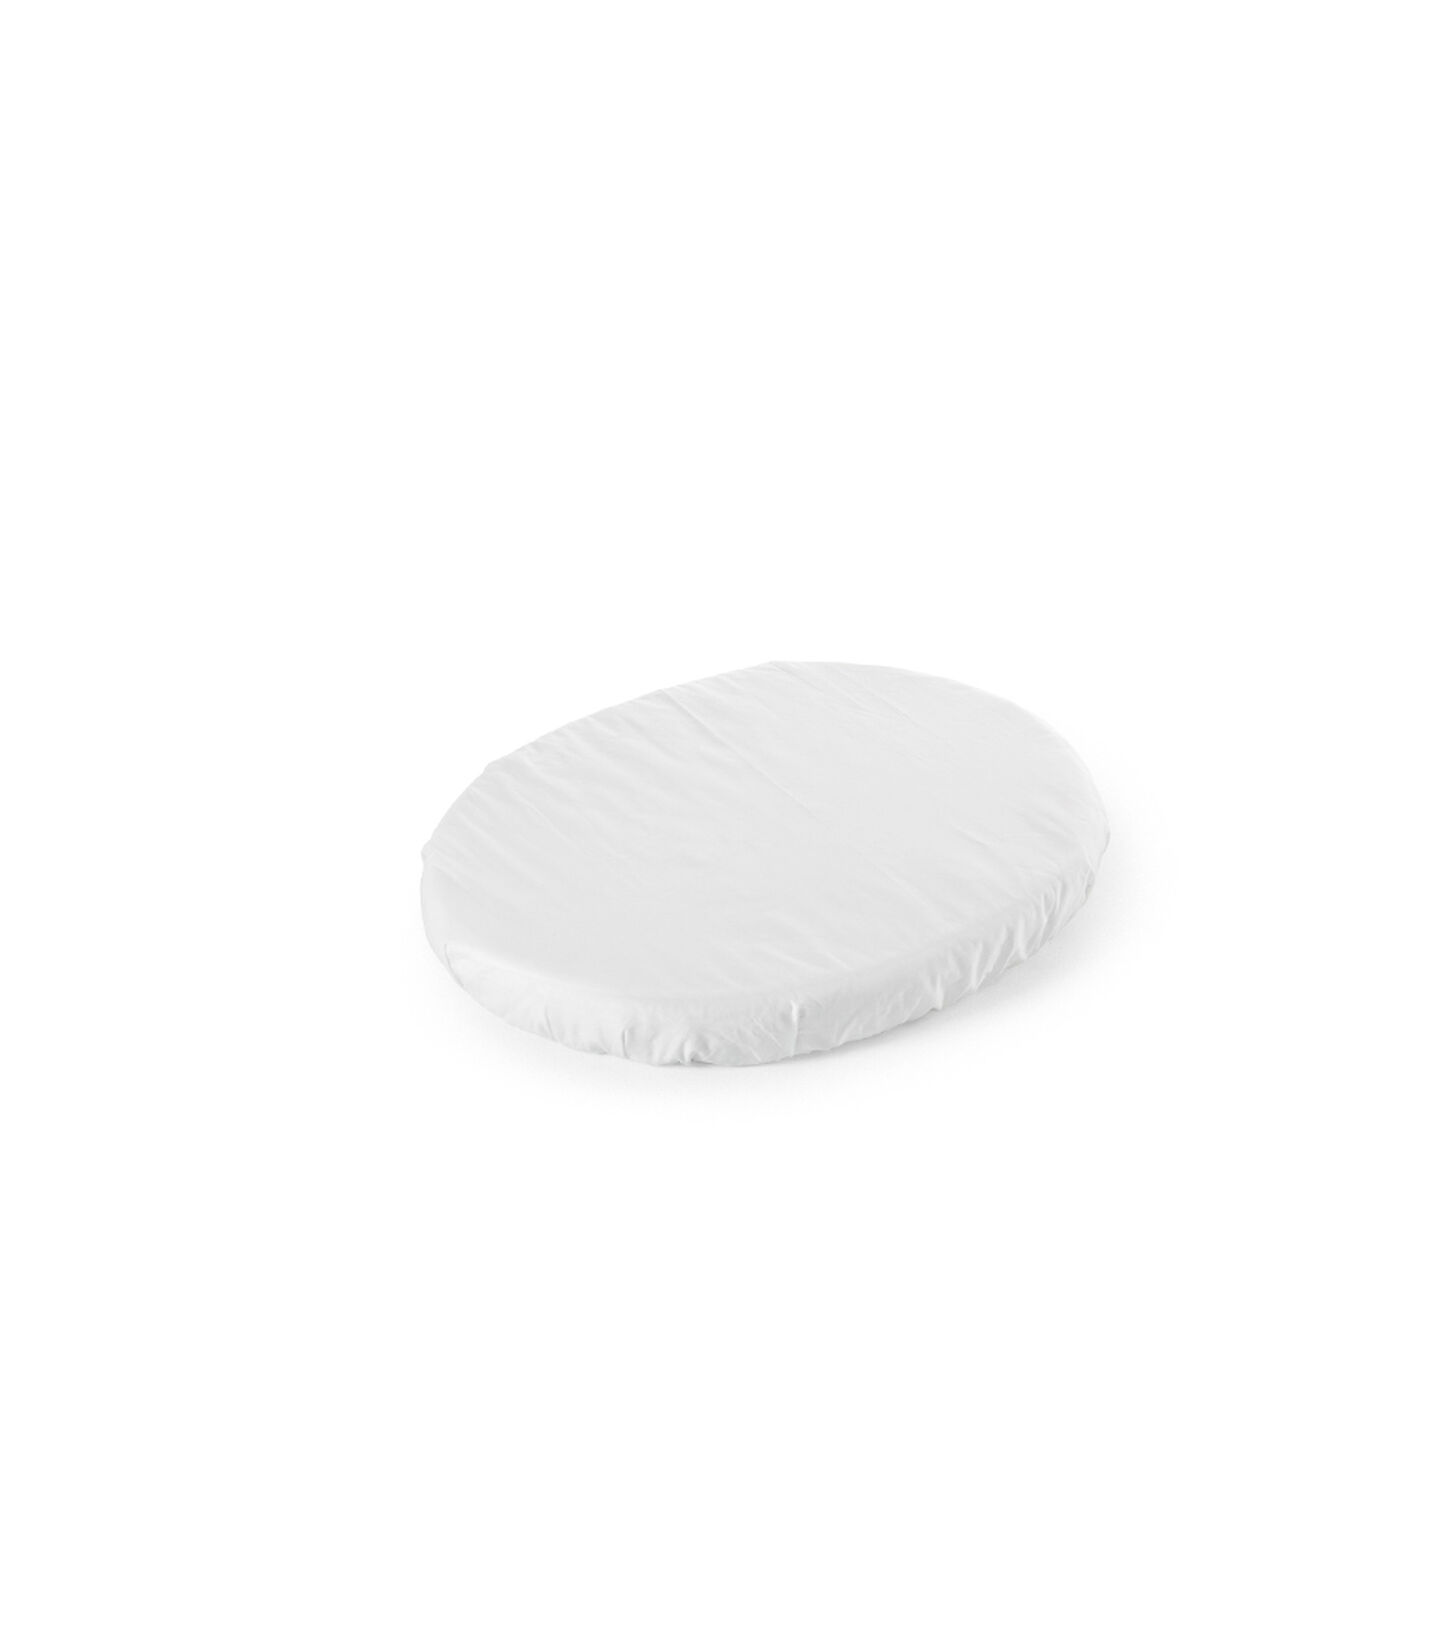 Stokke® Sleepi™ Mini - Prześcieradło White, Biały, mainview view 1